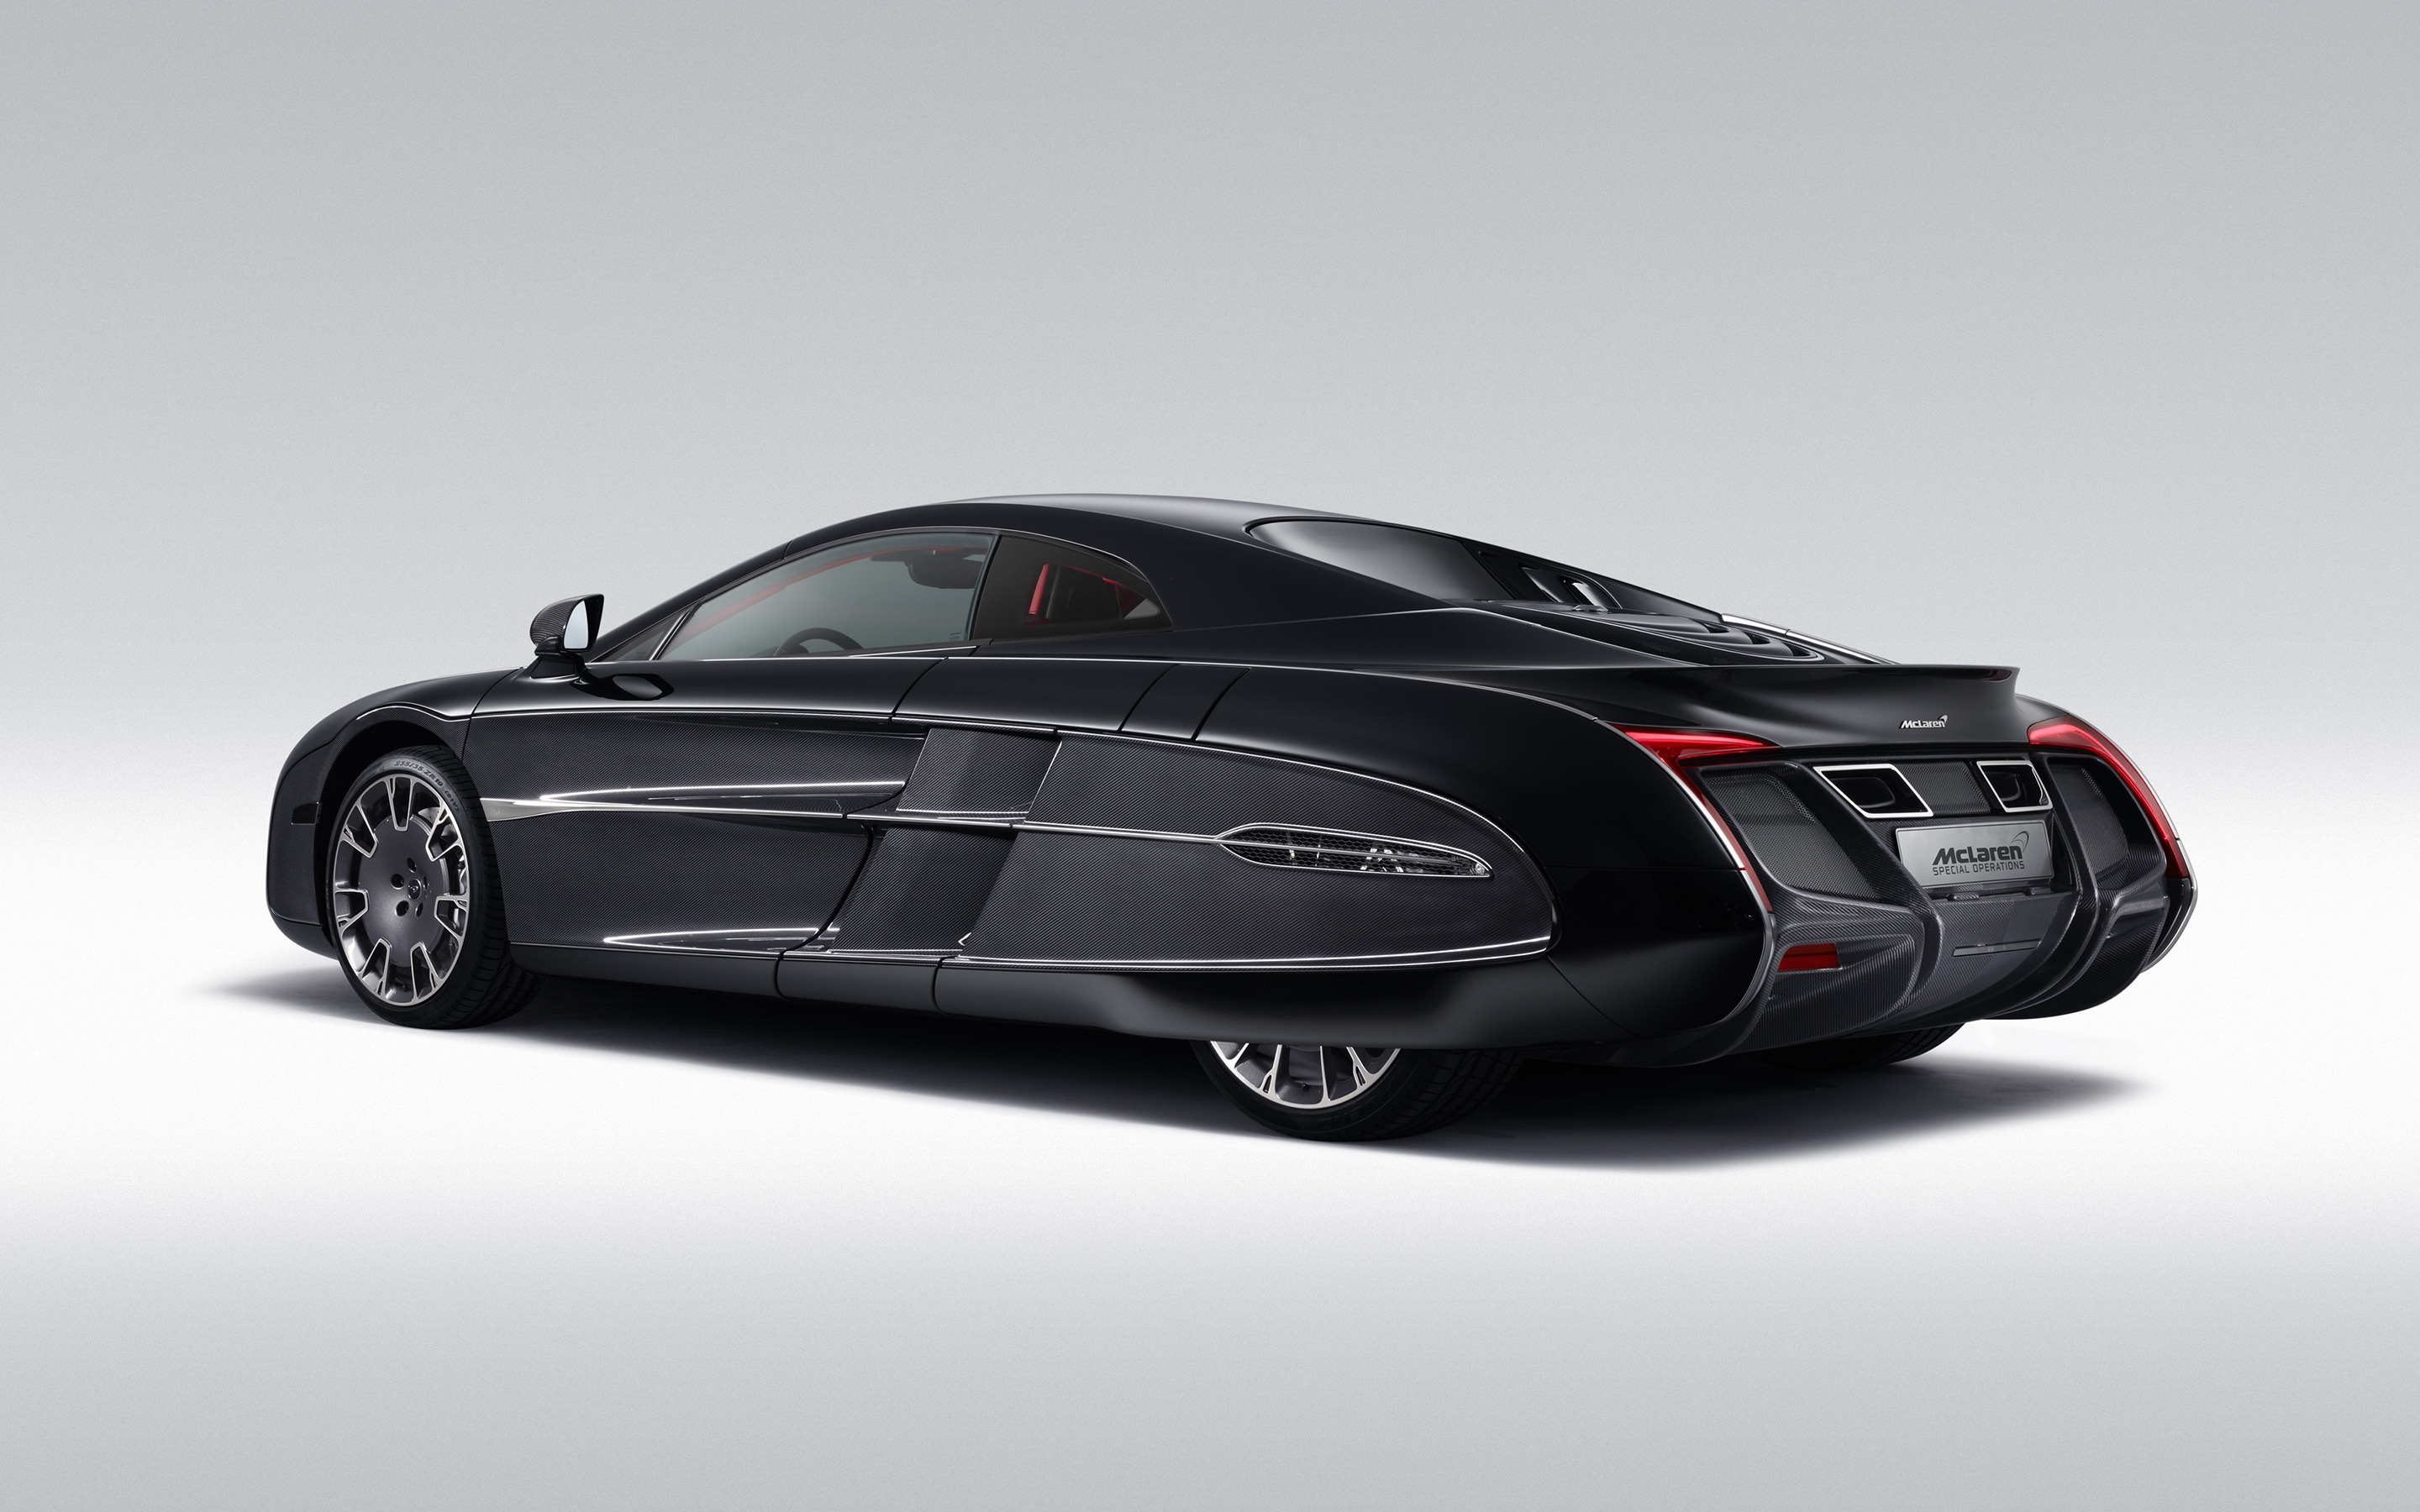 McLaren X1 Concept Studio for 2880 x 1800 Retina Display resolution